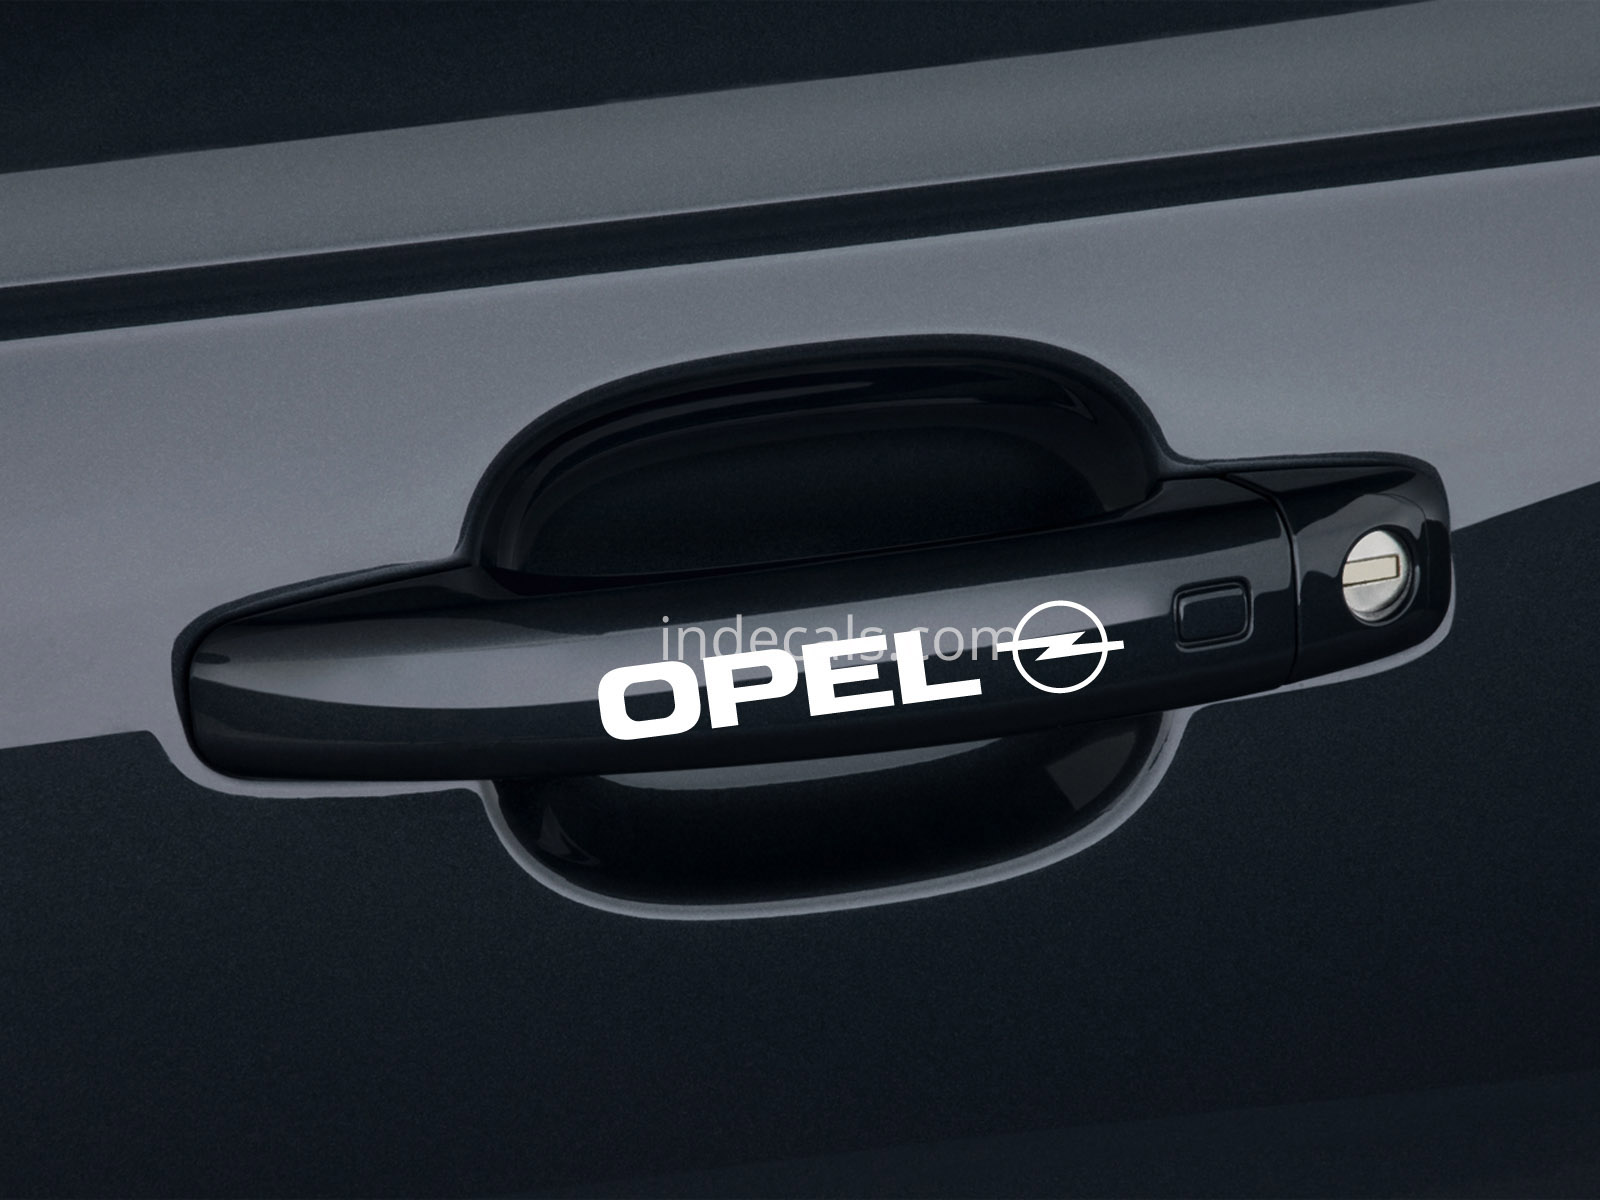 6 x Opel Stickers for Door Handles - White